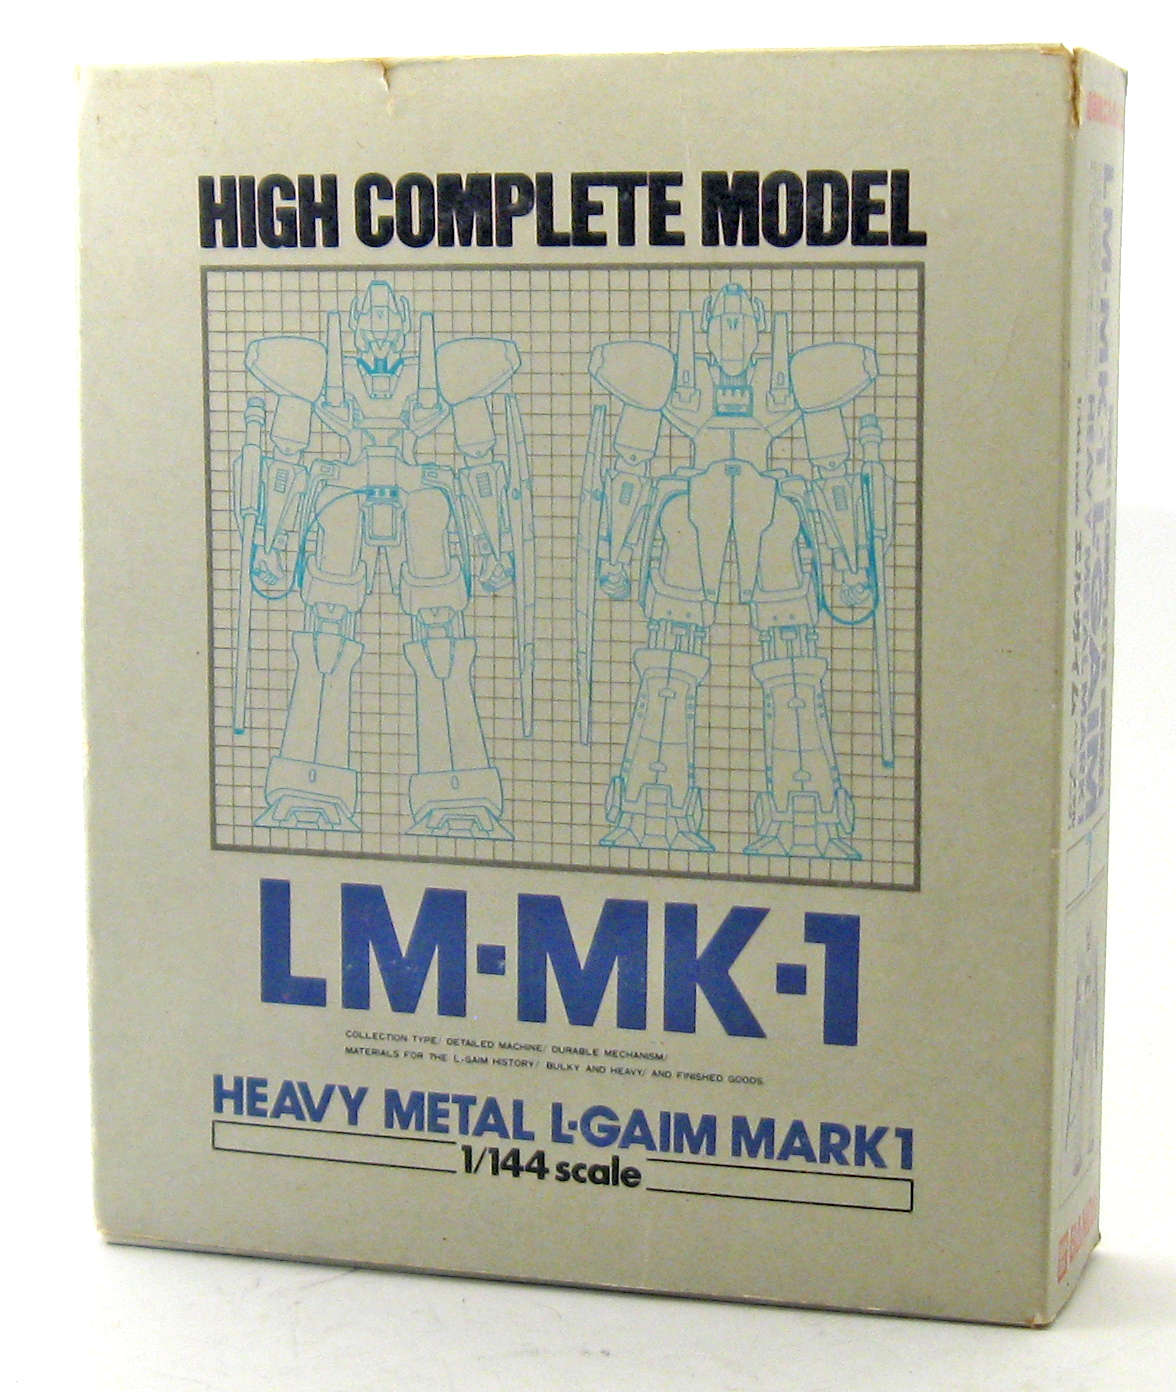 L-Gaim MK-1